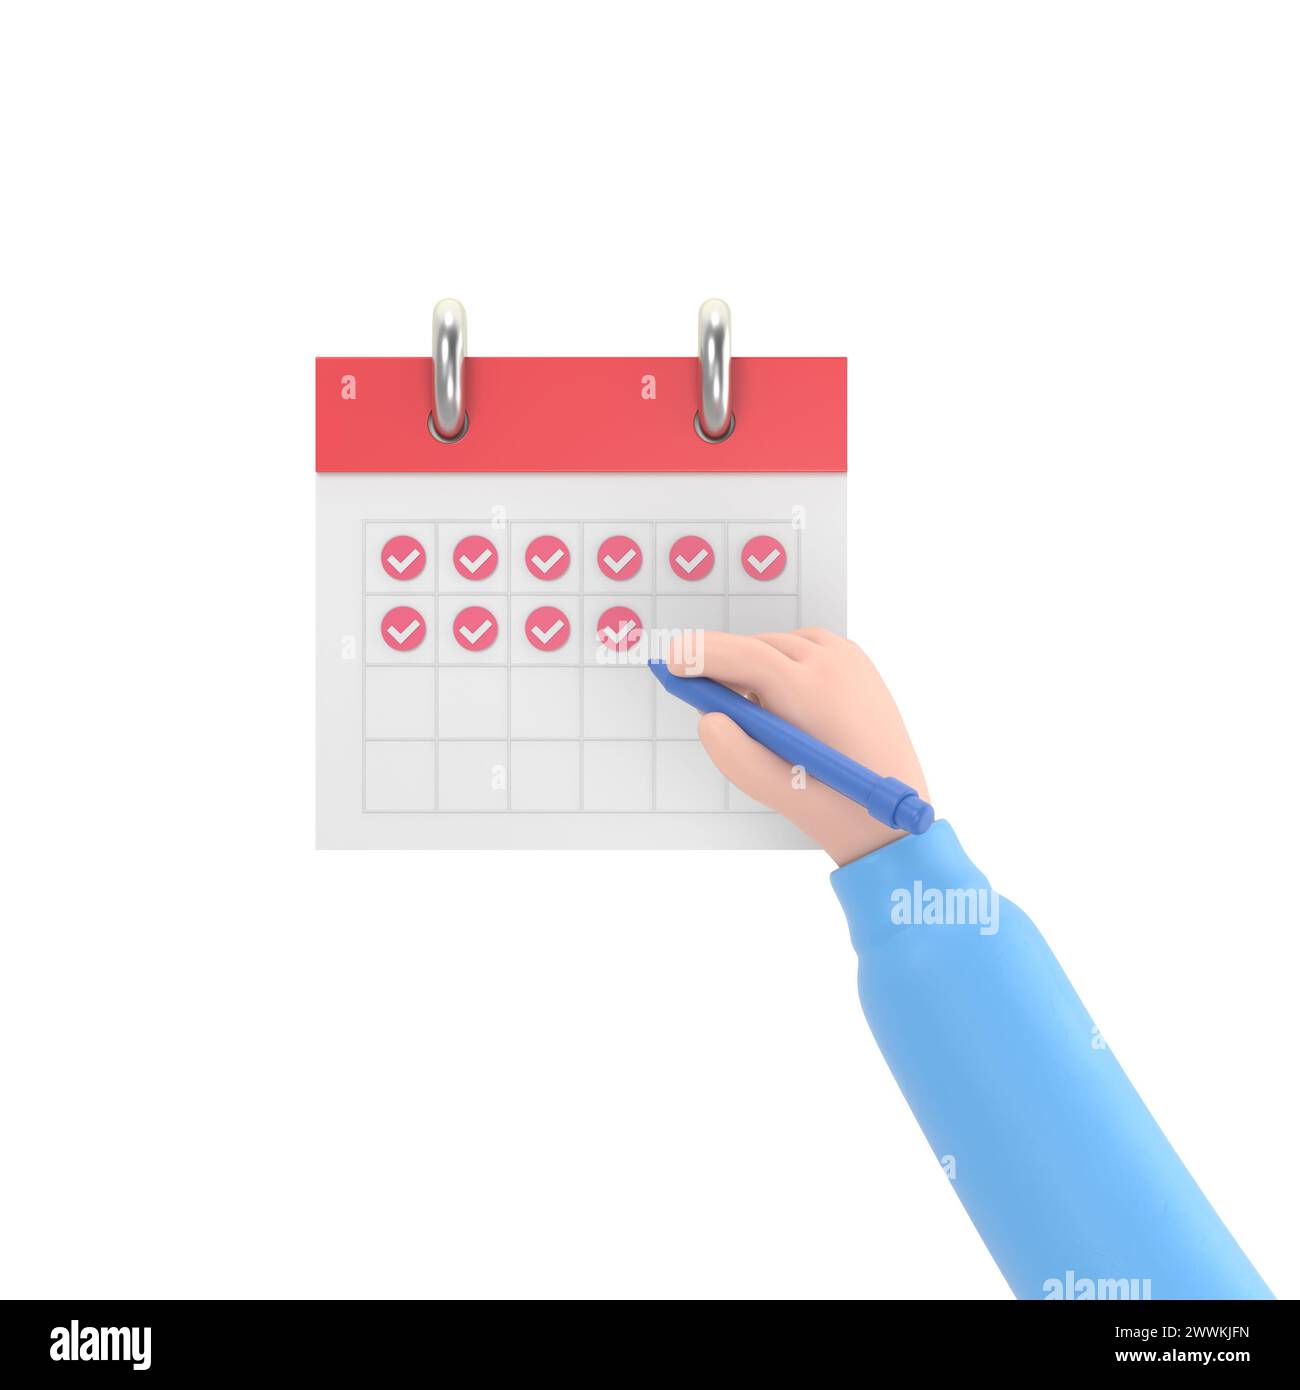 Zeichentrickgestensymbol Mockup.Geschäftsmann-Handmarke auf dem Kalender,3D-Rendering auf weißem Hintergrund. Stockfoto